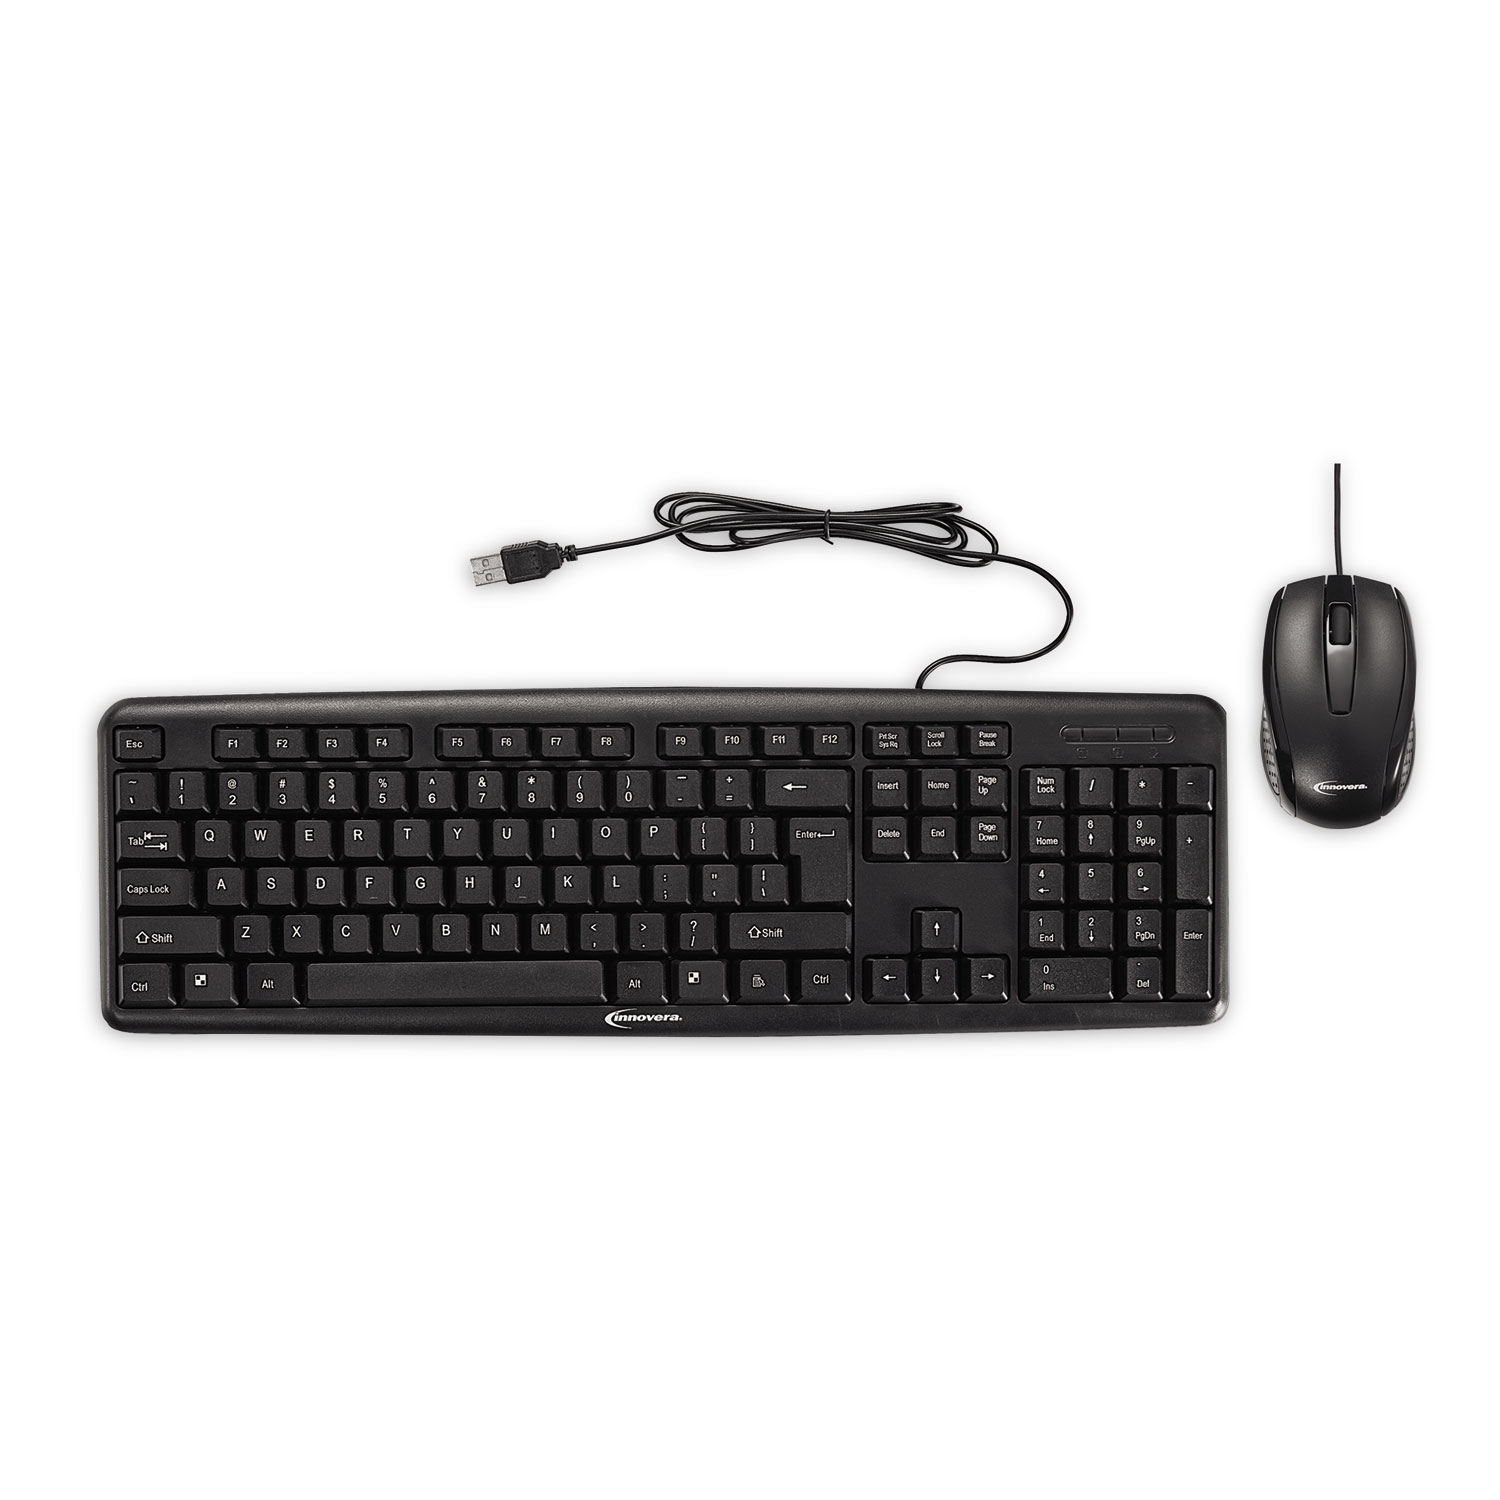  Innovera IVR69202 Slimline Keyboard and Mouse, USB 2.0, Black (IVR69202) 